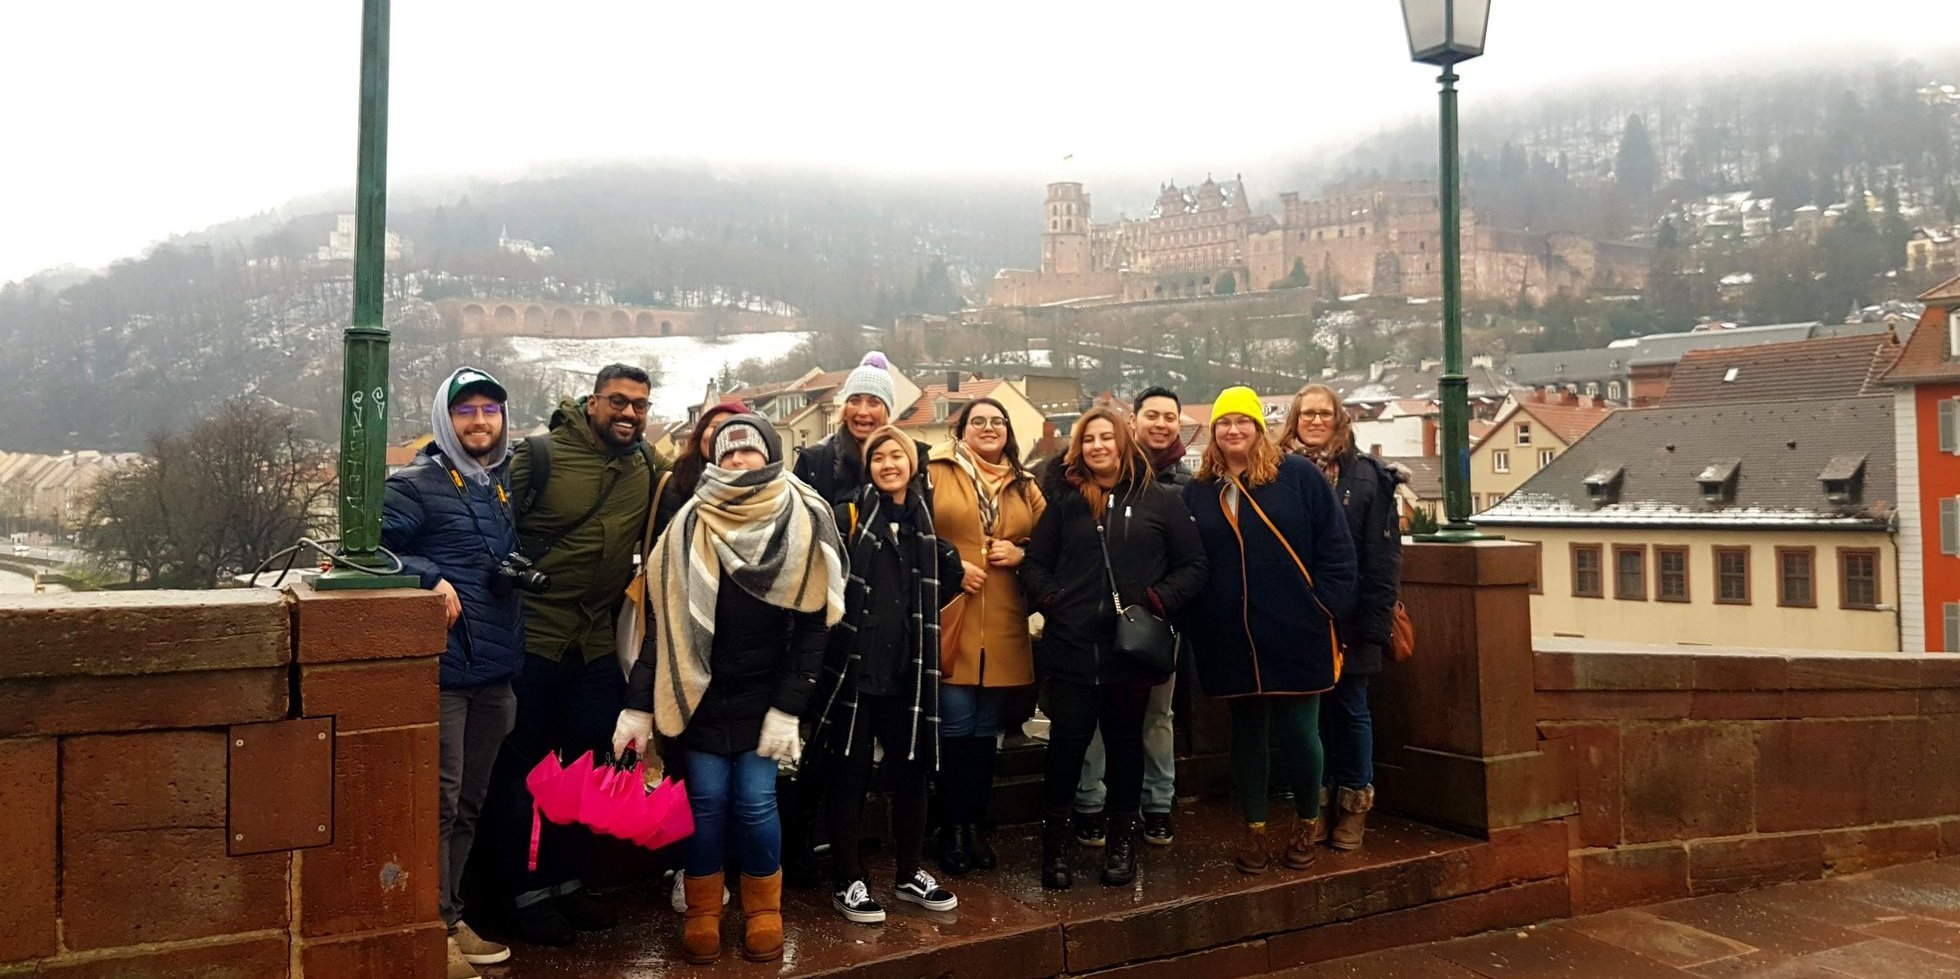 Eine Gruppe von internationalen Studierenden steht vor dem Heidelberger Schloss in einer winterlichen Atmosphäre